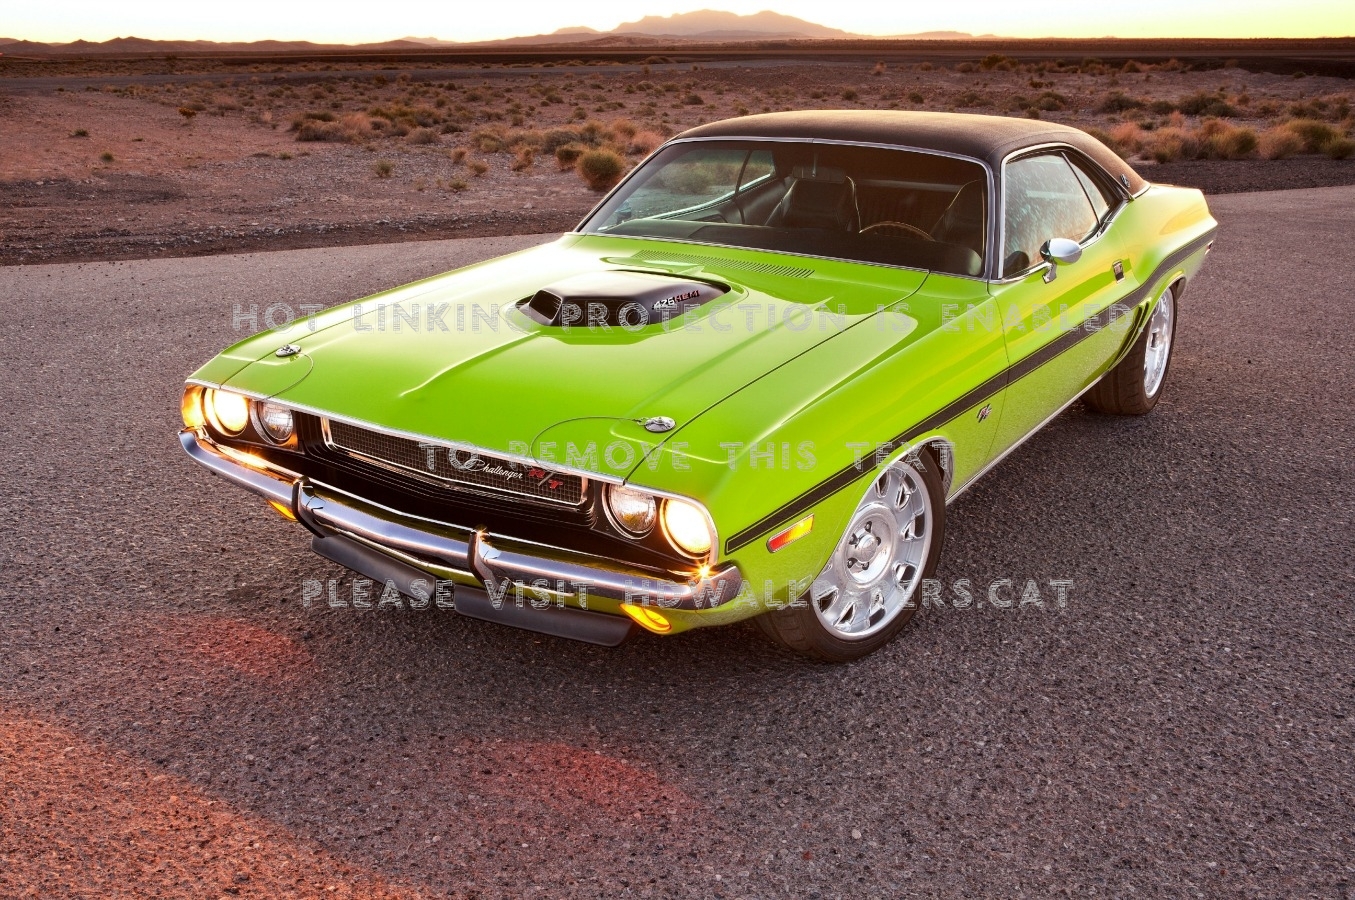 1 000 Hp 1970 Dodge Challenger Mopar Lime - Green 1970 Dodge Challenger Rt - HD Wallpaper 